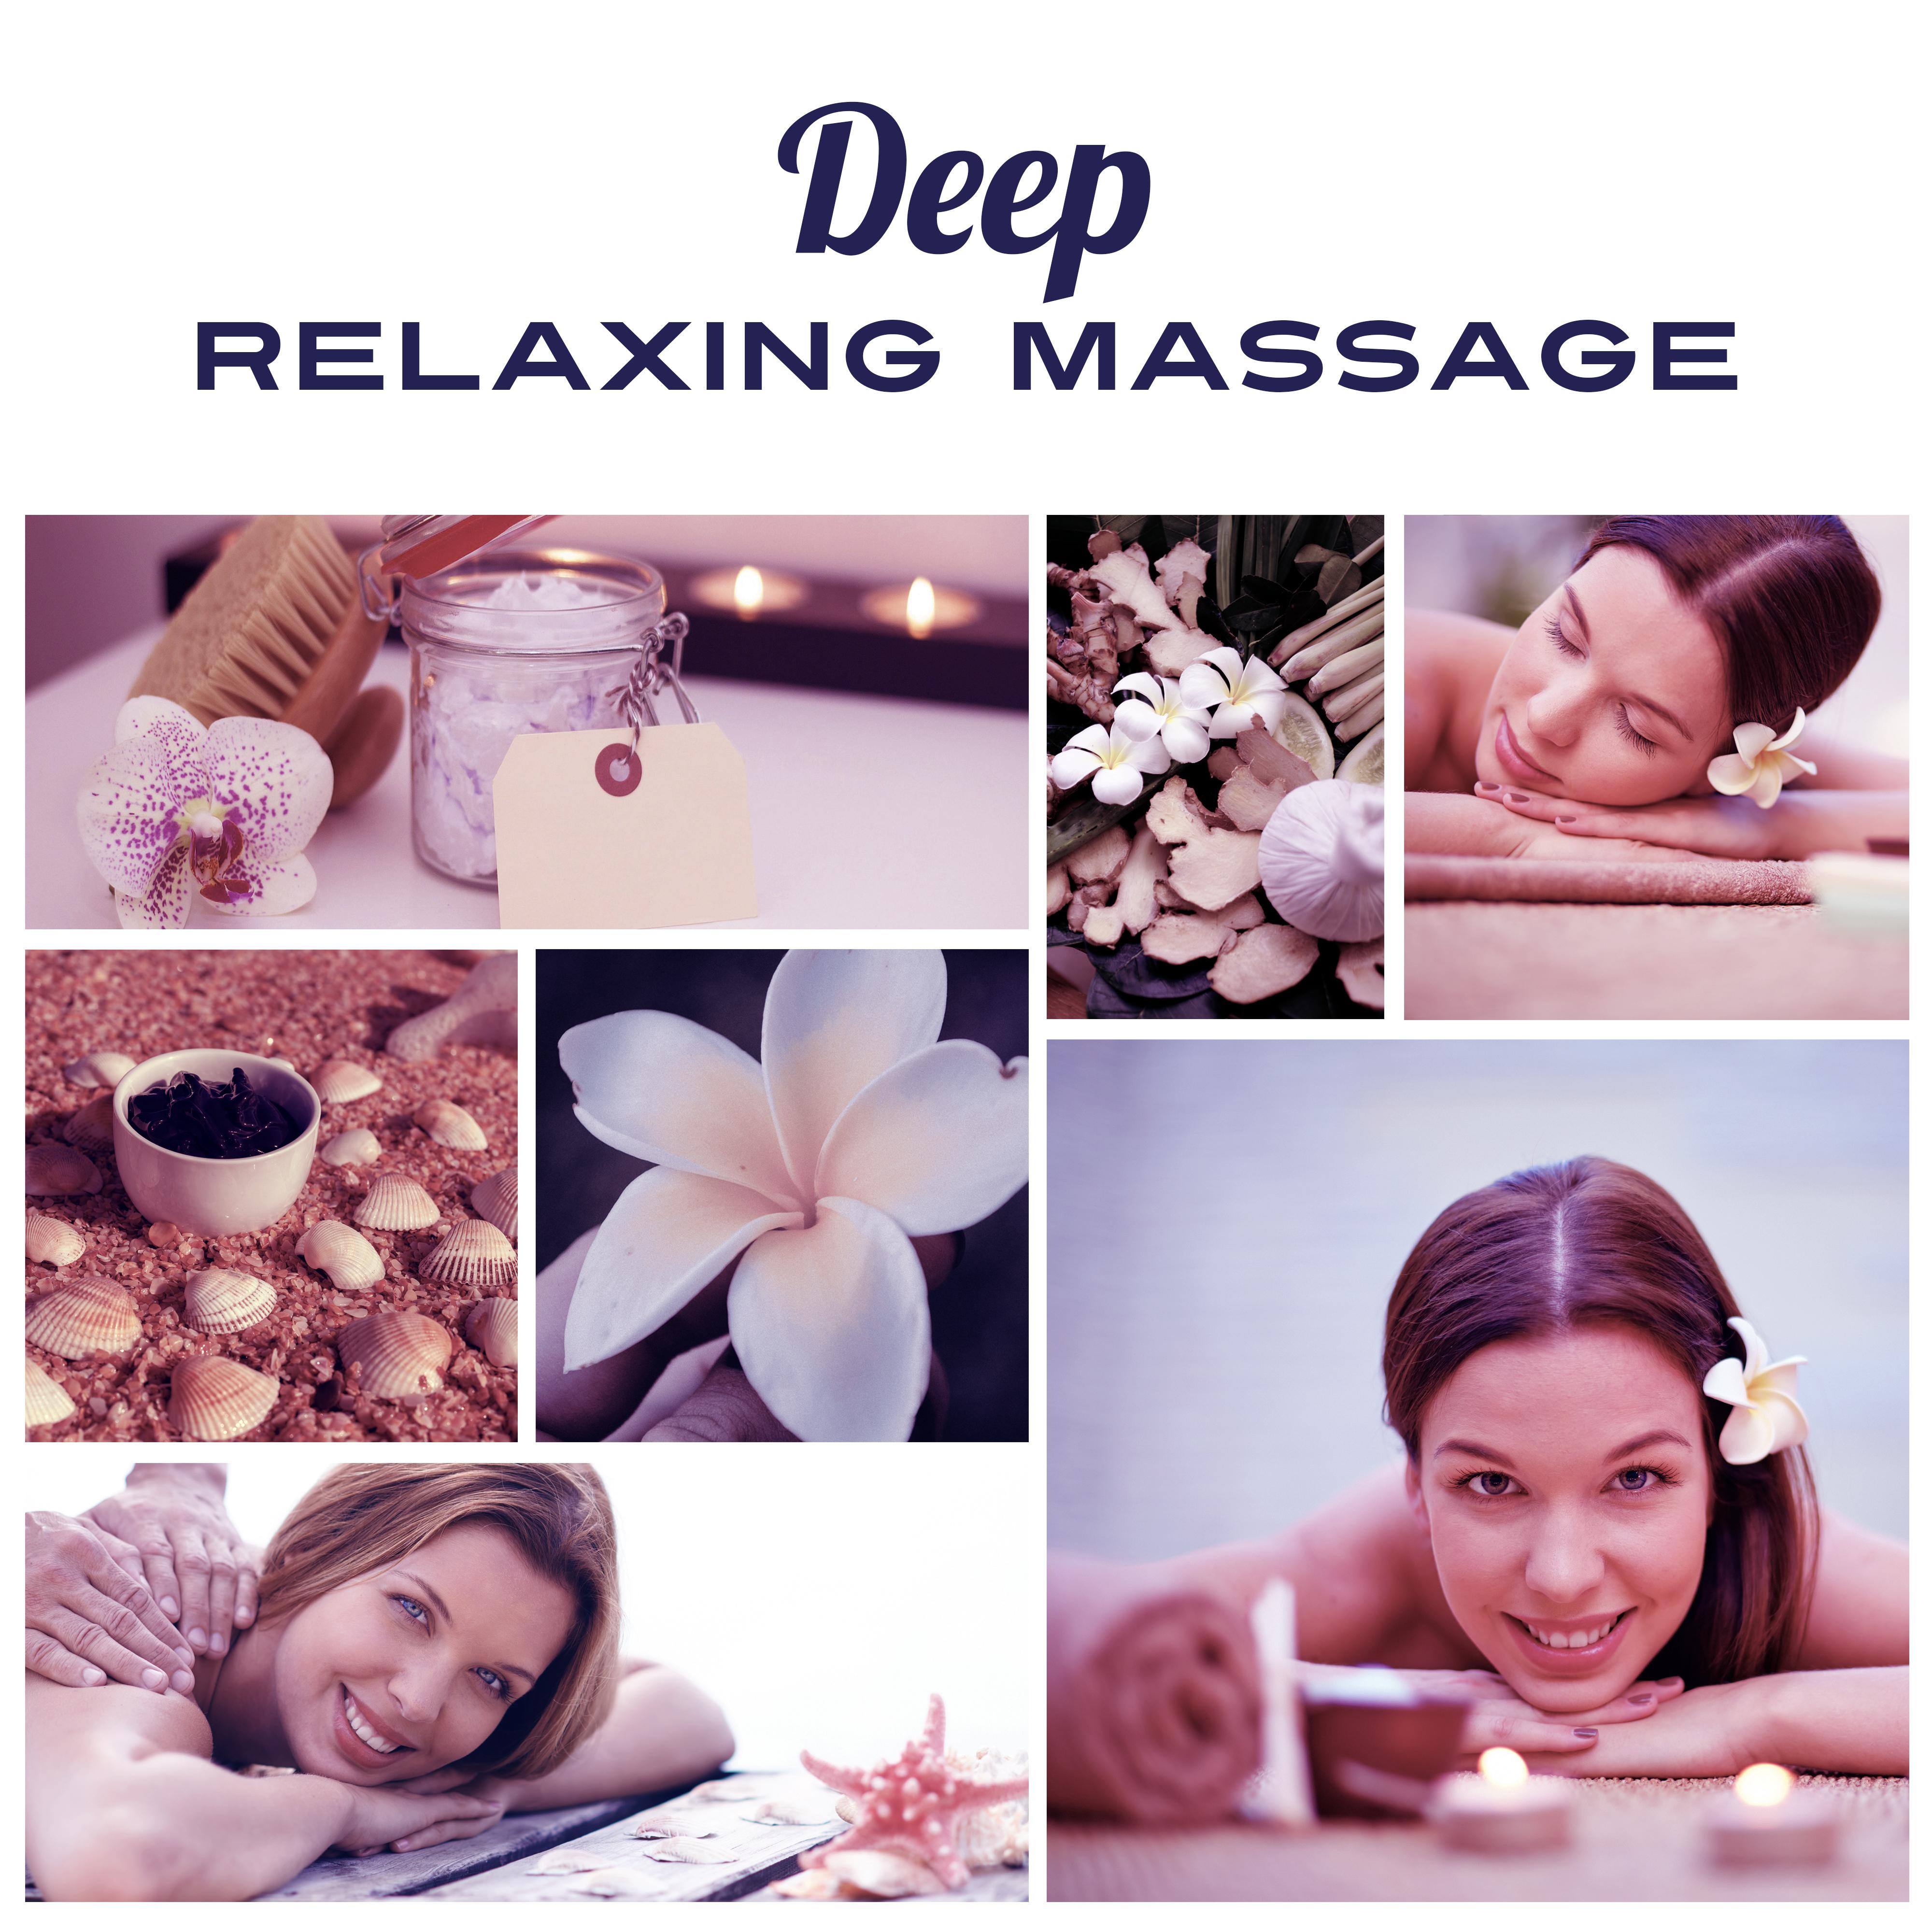 Deep Relaxing Massage  Peaceful Sounds of Nature, Calm Down, Rest, Relax, Massage Music, Wellness